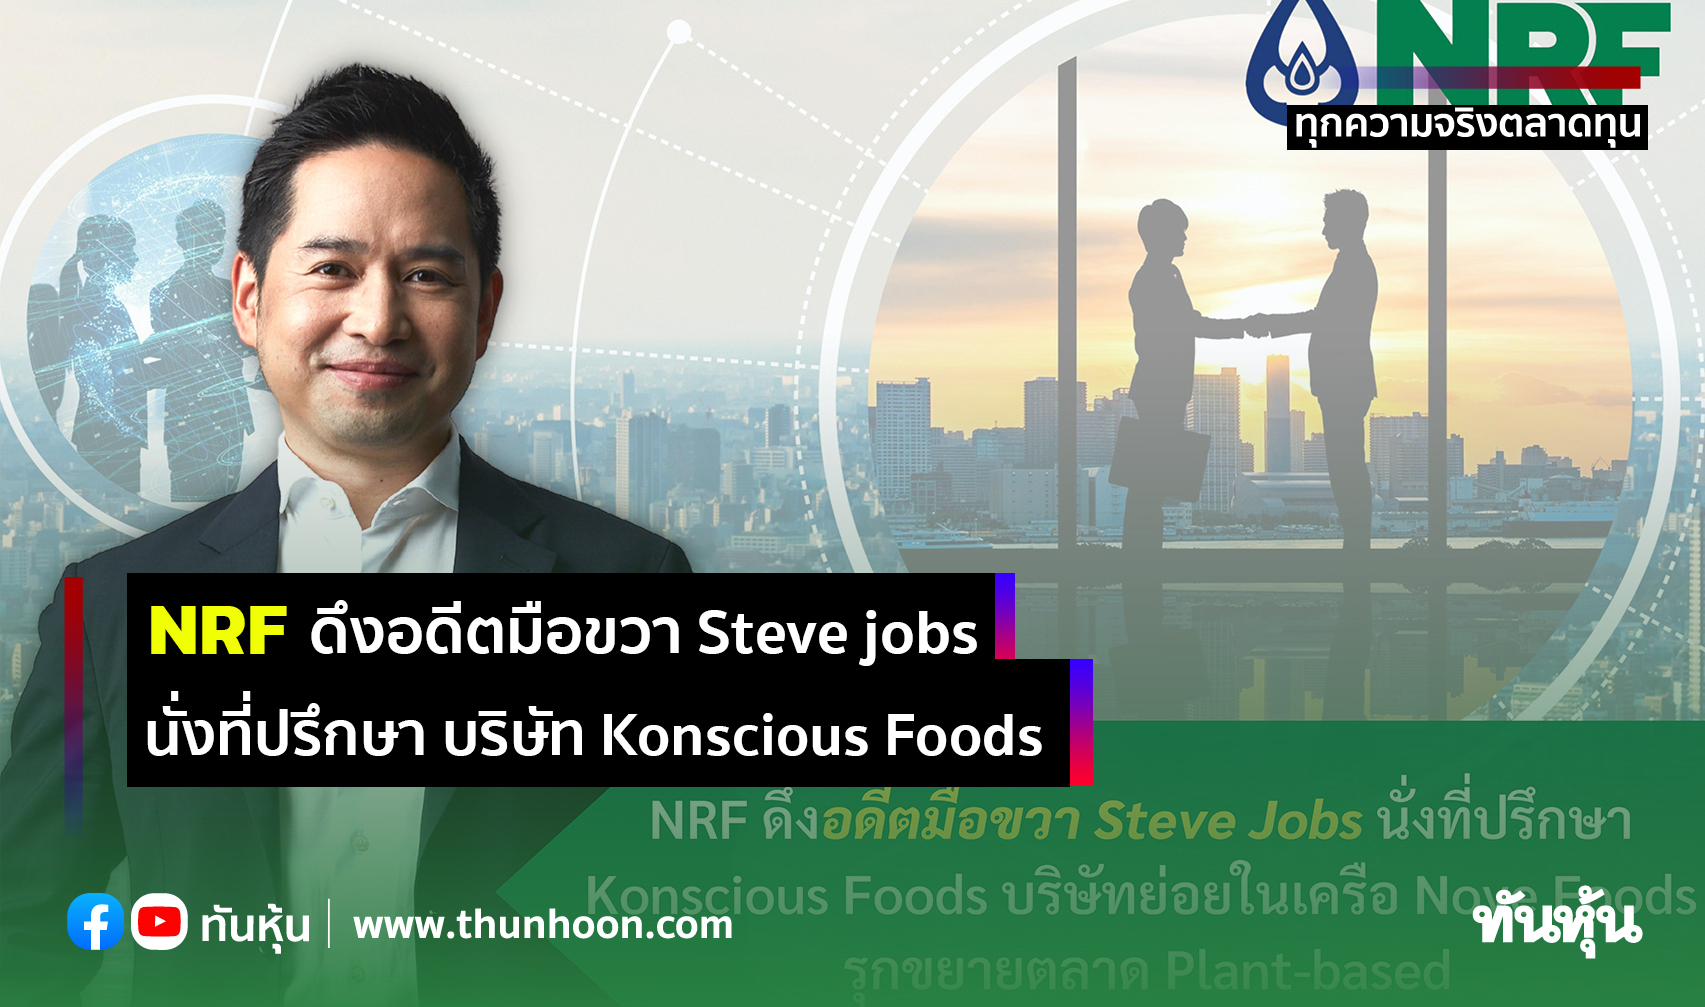 NRF ดึงอดีตมือขวา Steve jobs  นั่งที่ปรึกษา บริษัท Konscious Foods